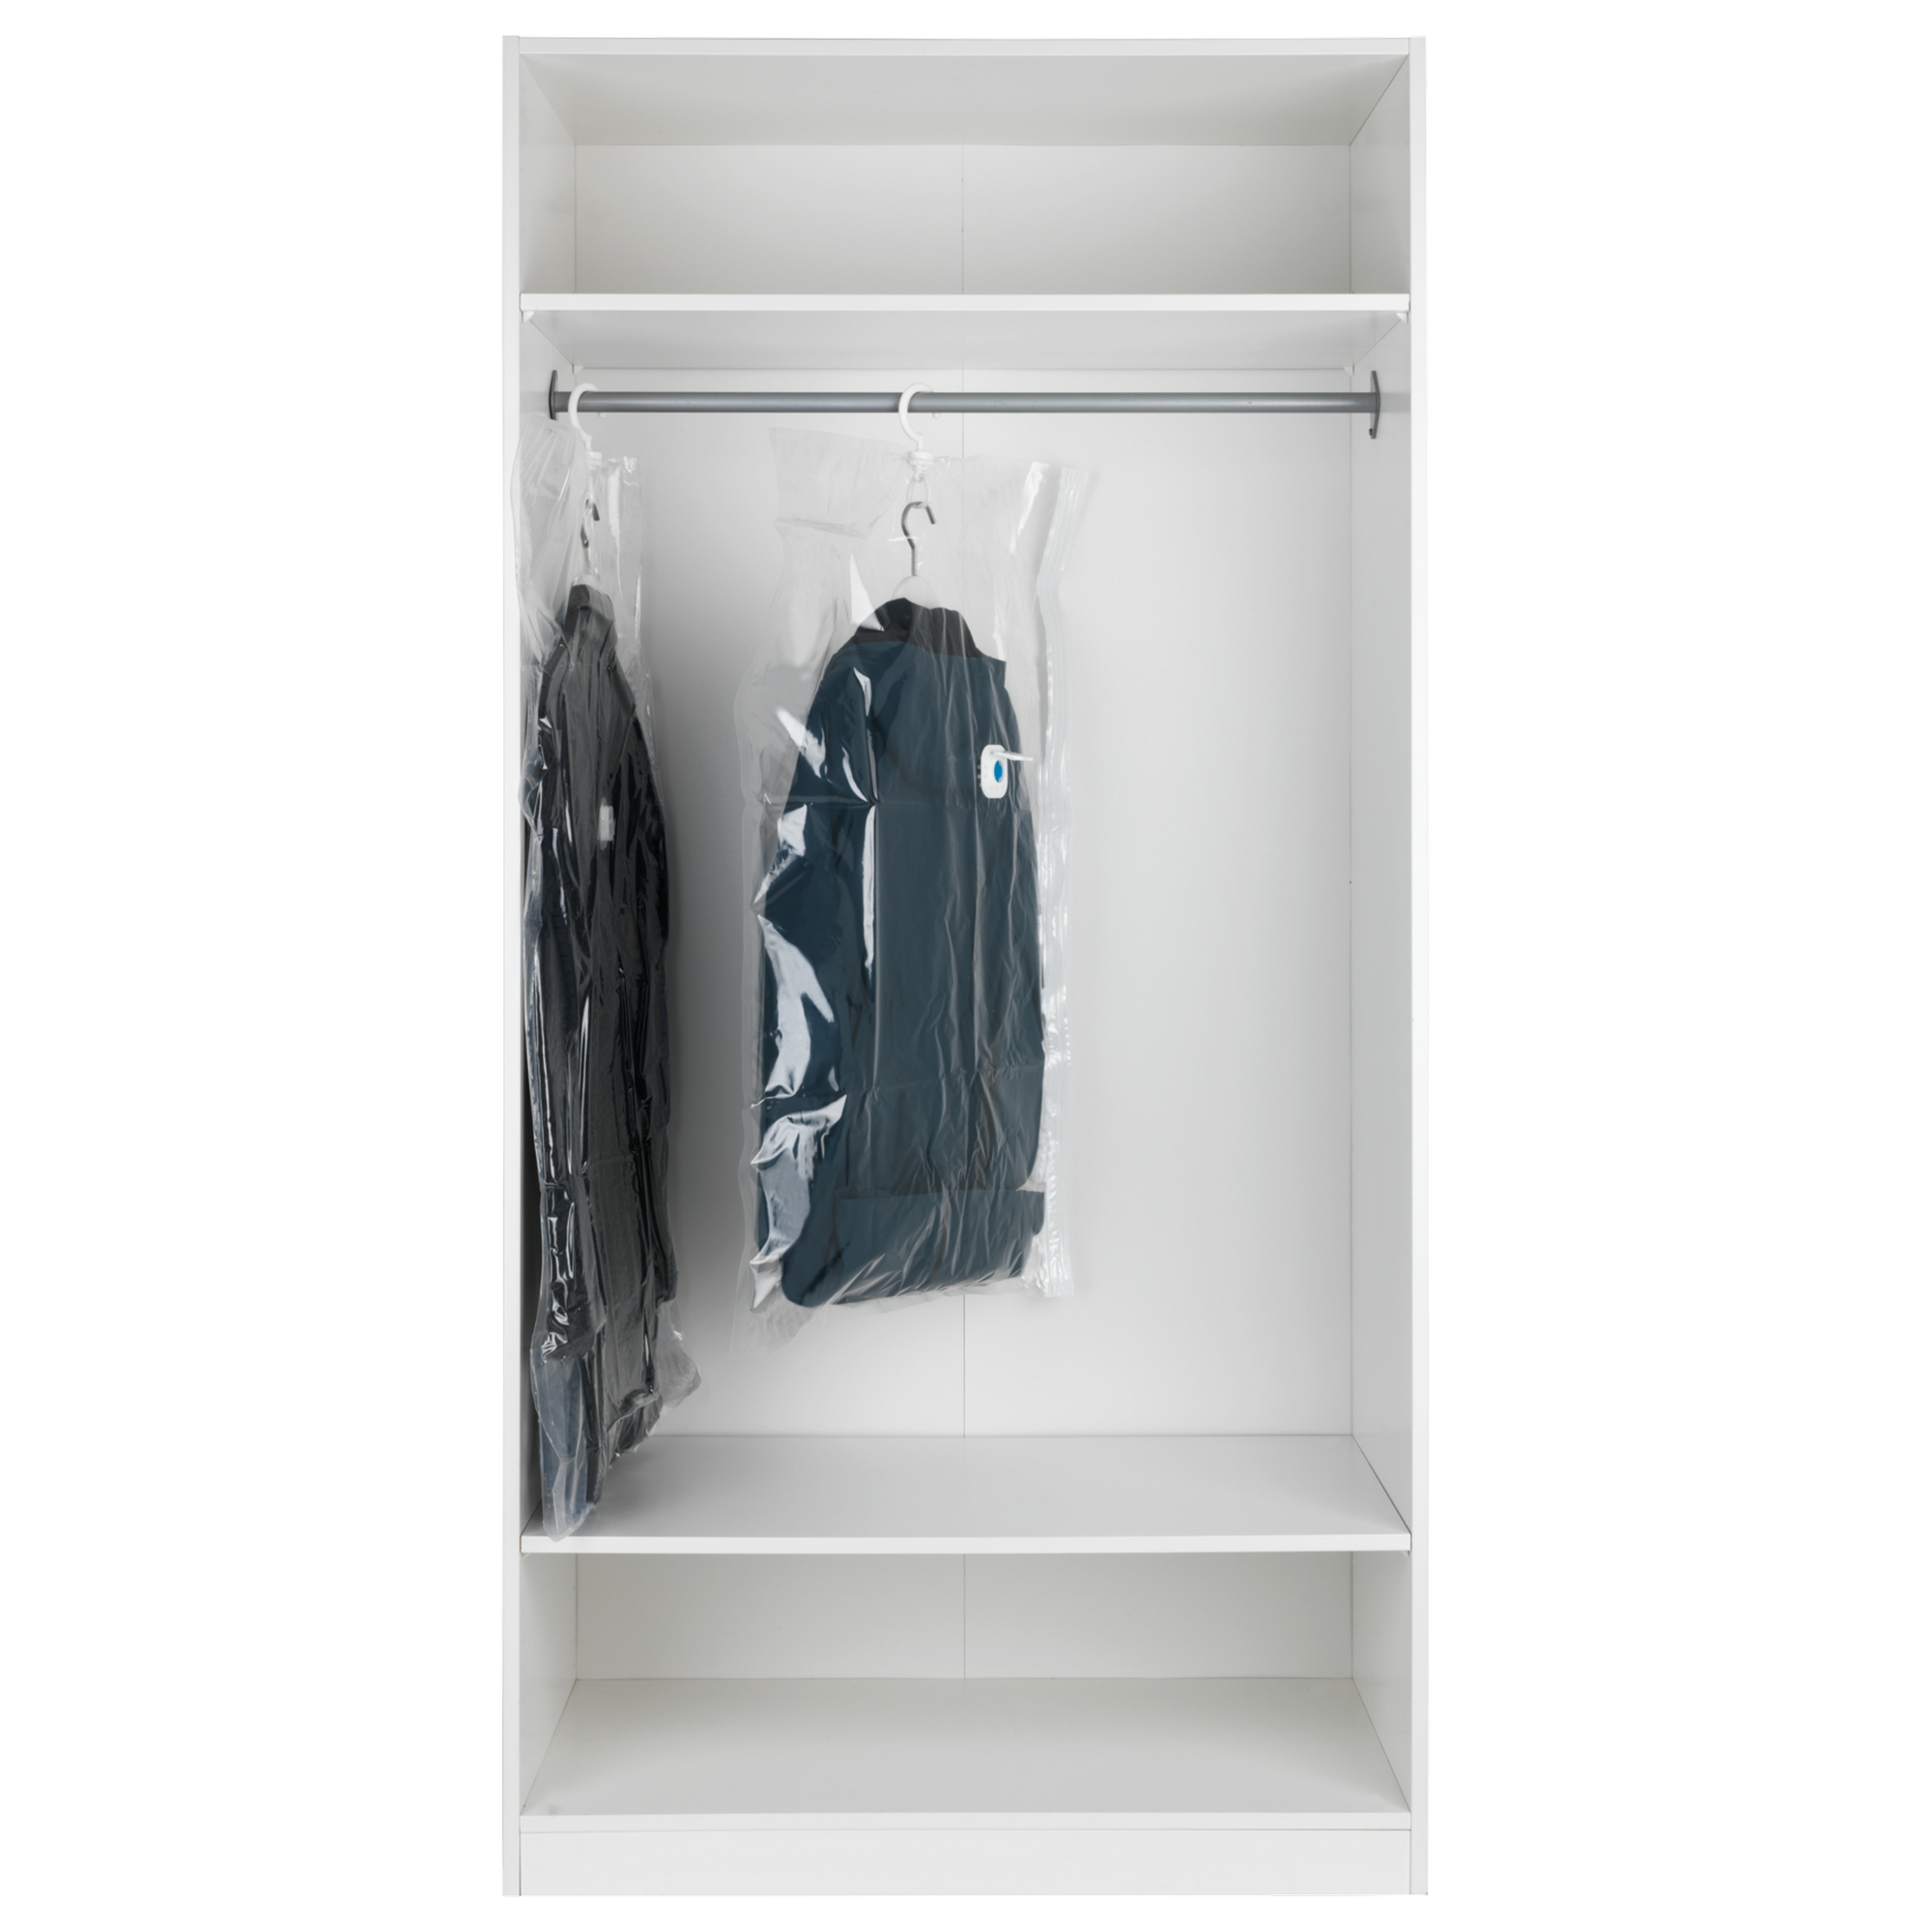 Kleidersack 'Vakuum L' transparent, 105 x 70 cm + product picture